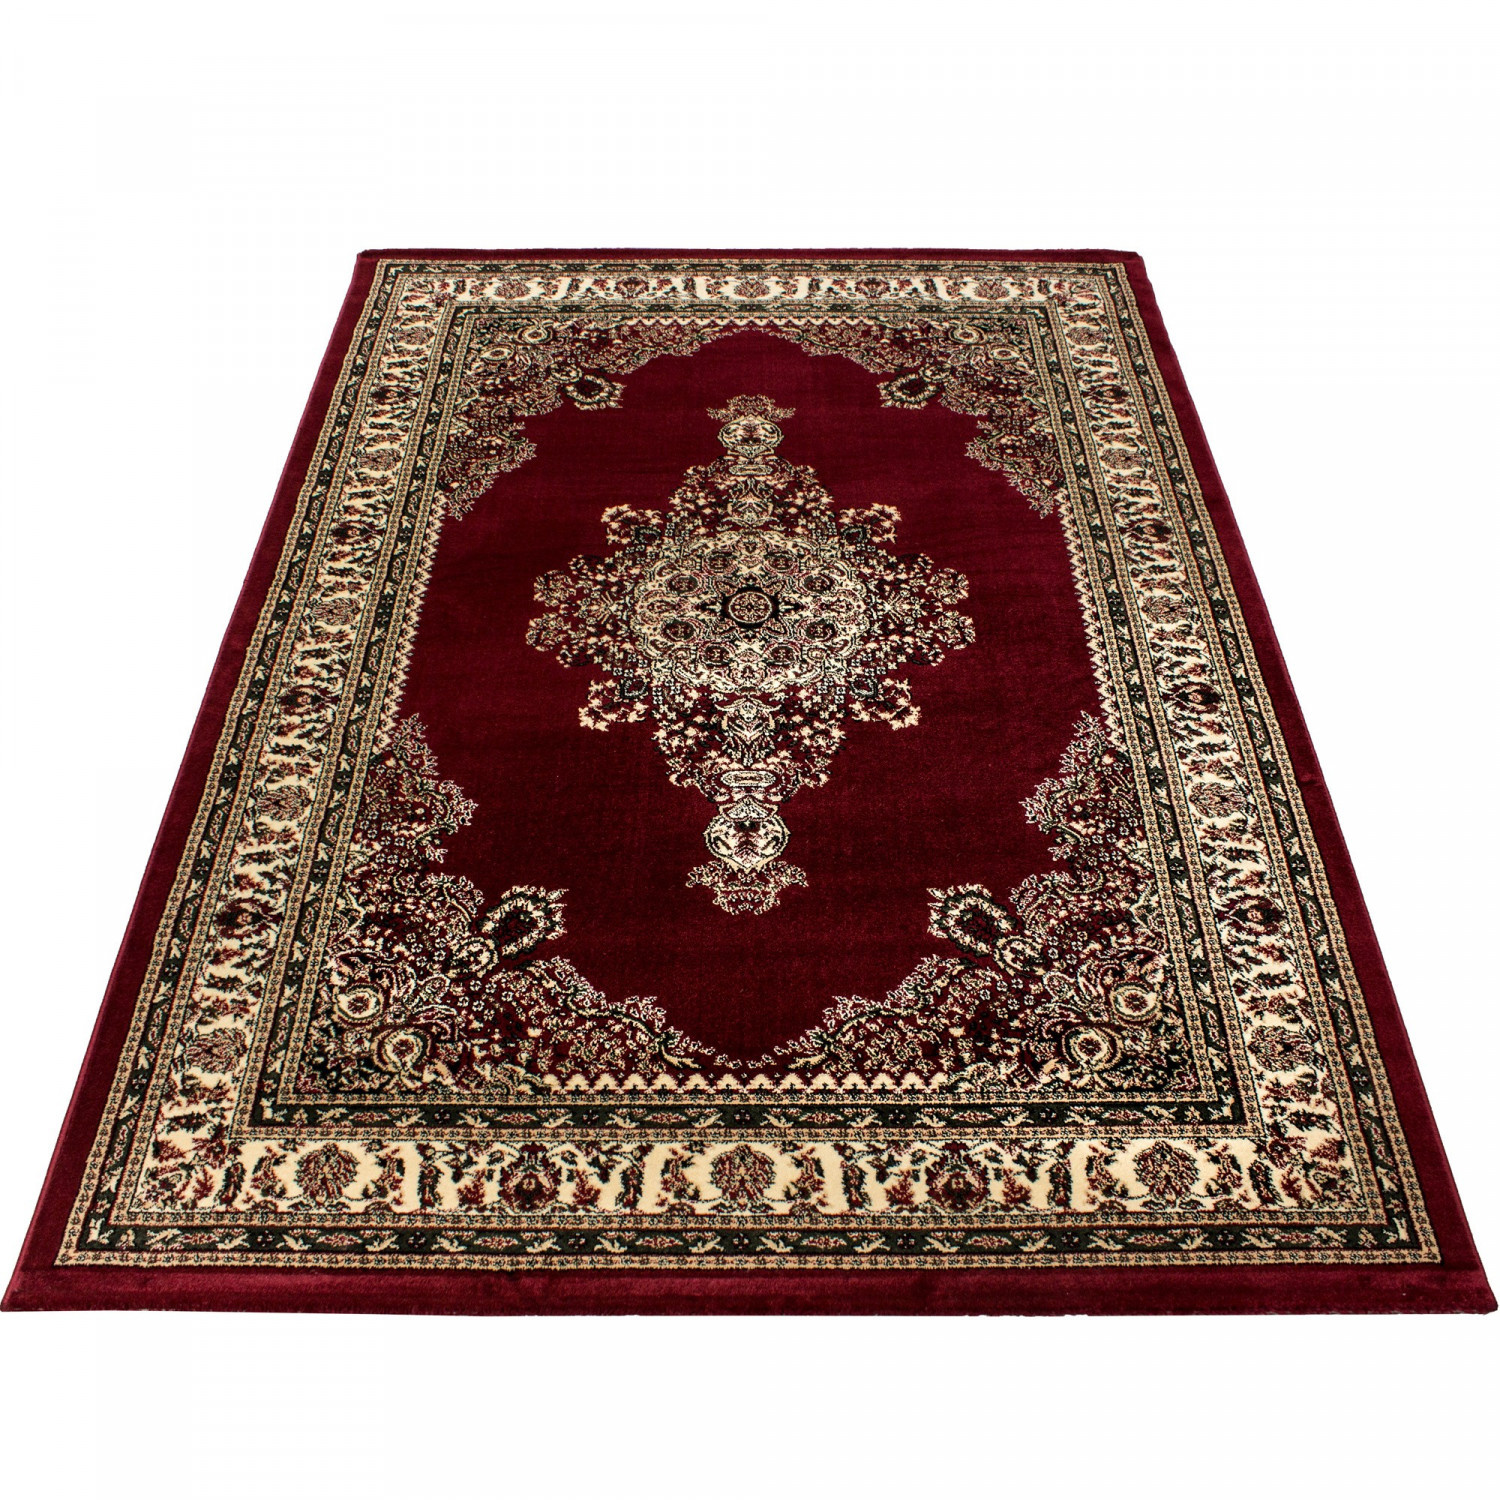 Oosterse laagpolige tapijten uit de Marrakesh collectie - Tapijtenloods.nl